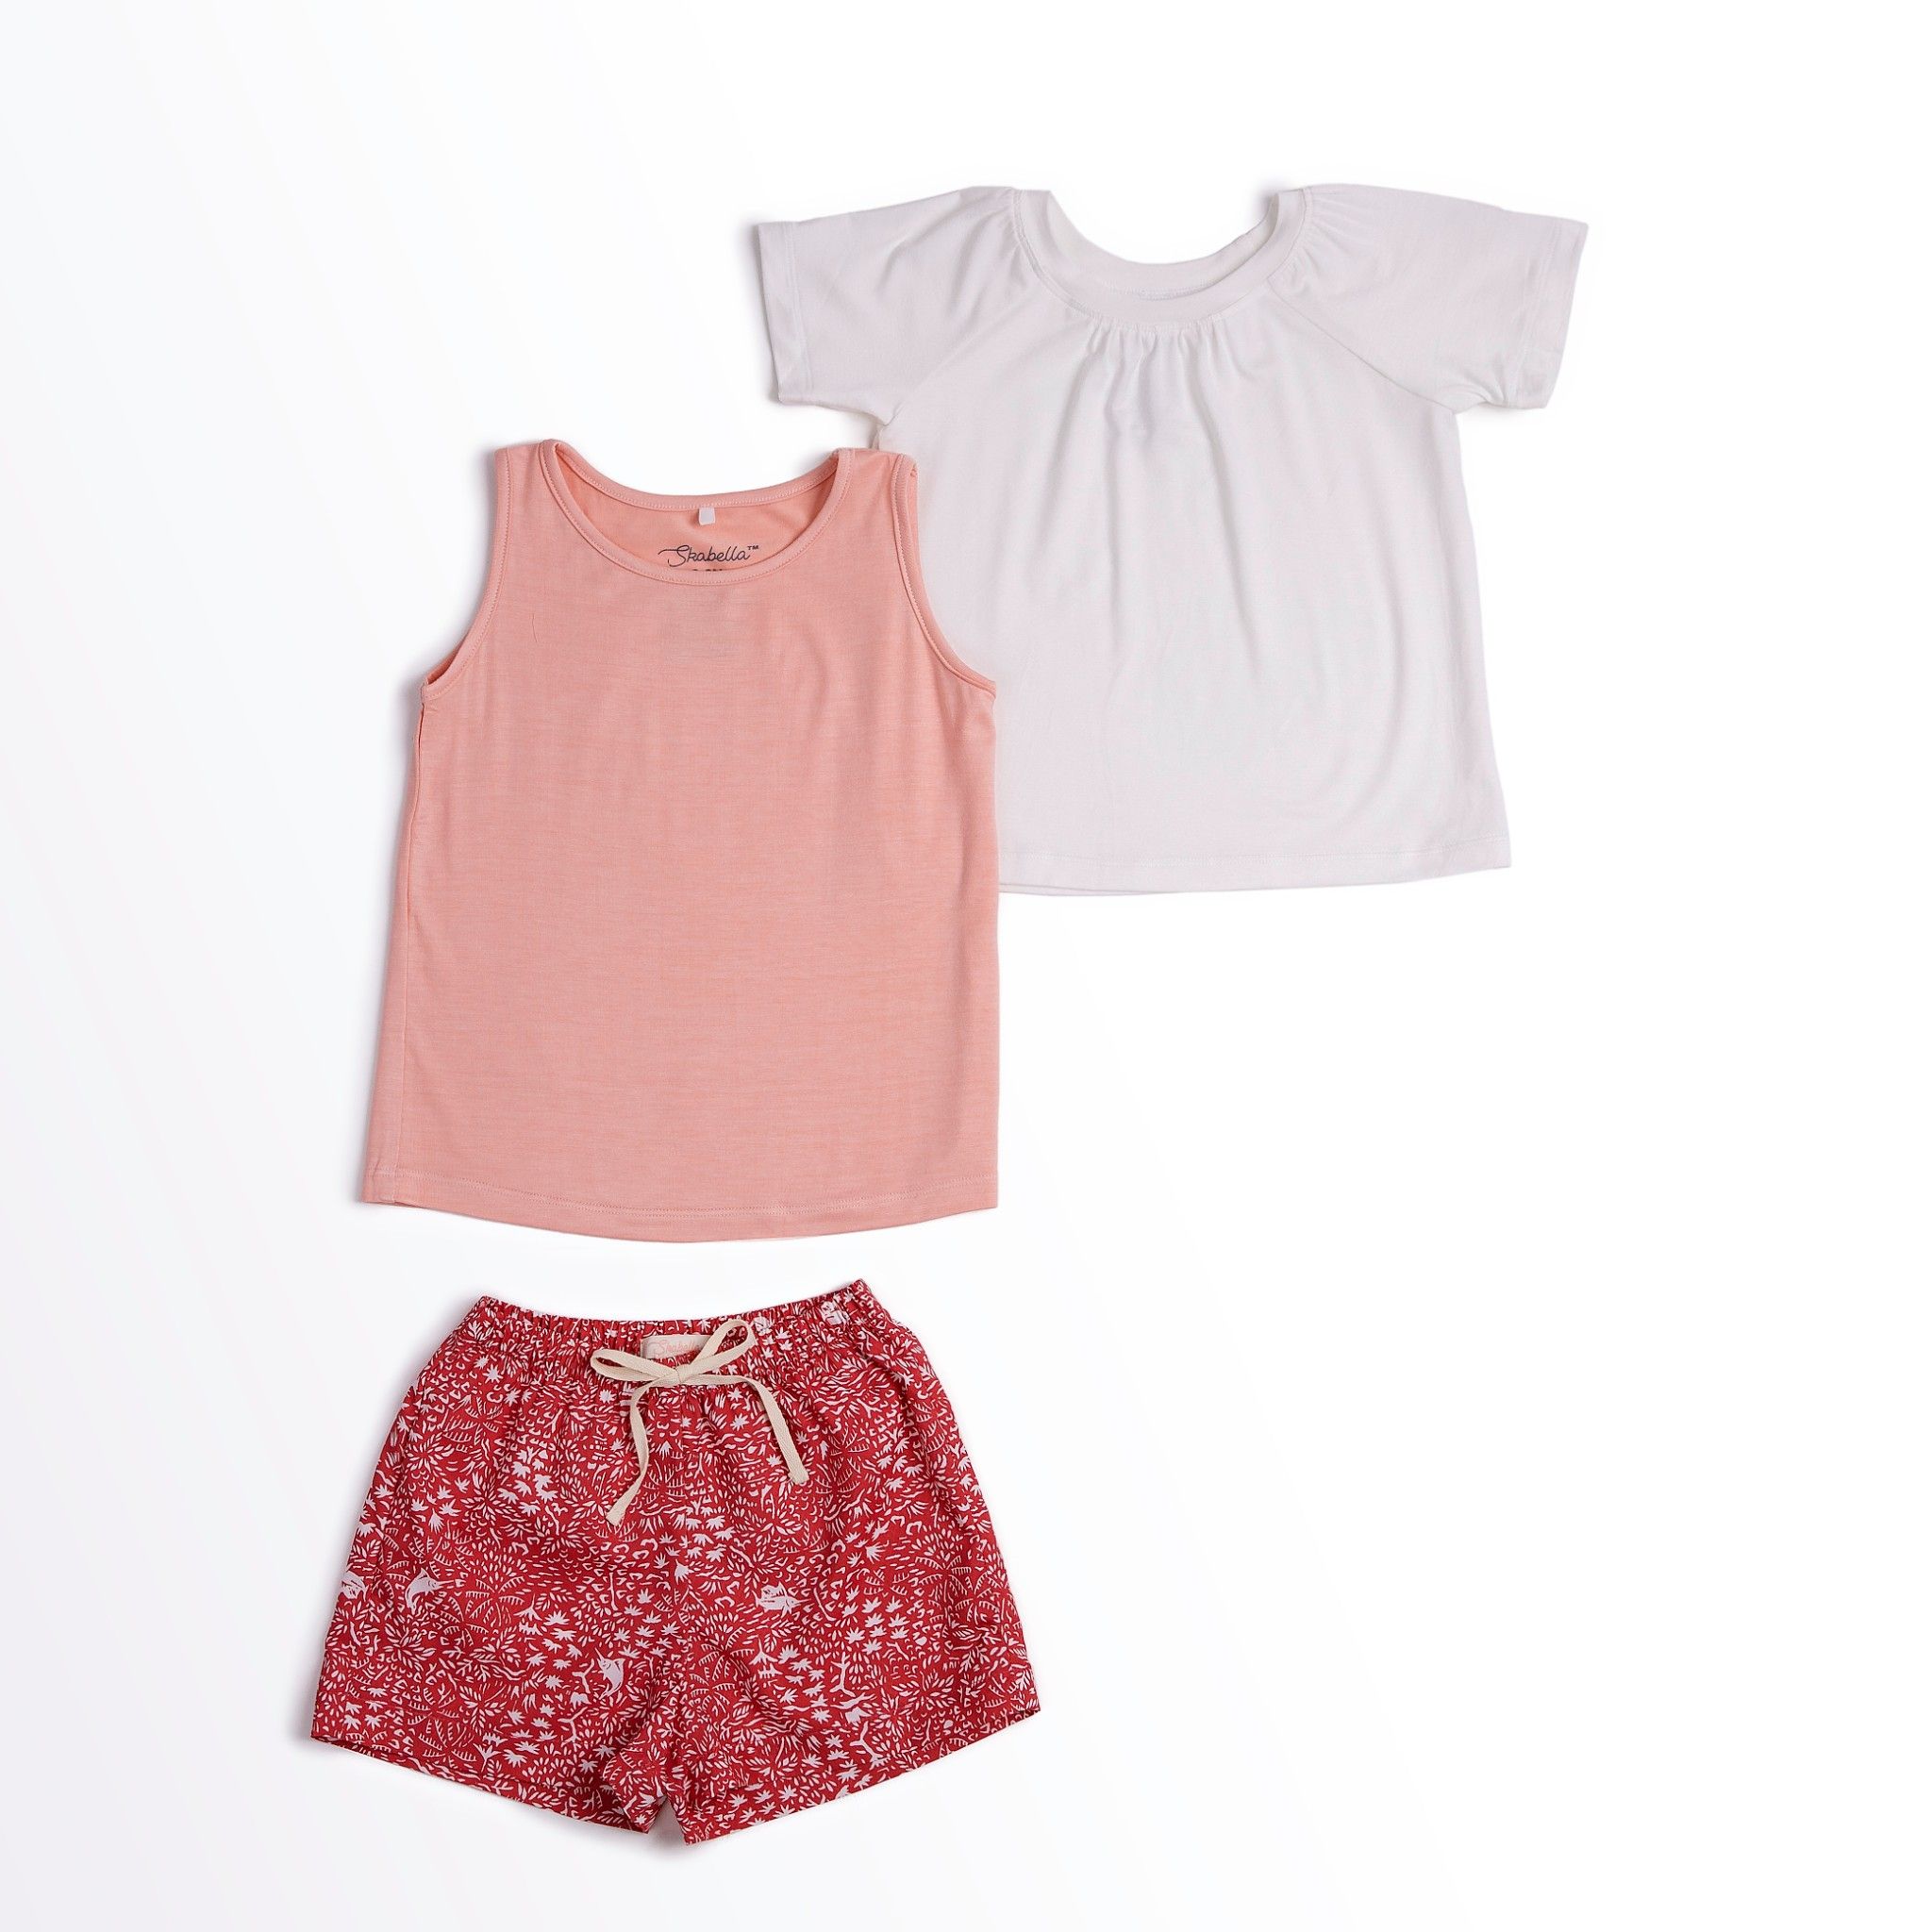  Bộ mặc nhà Bé Gái quần shorts - Áo hồng/trắng quần cam 